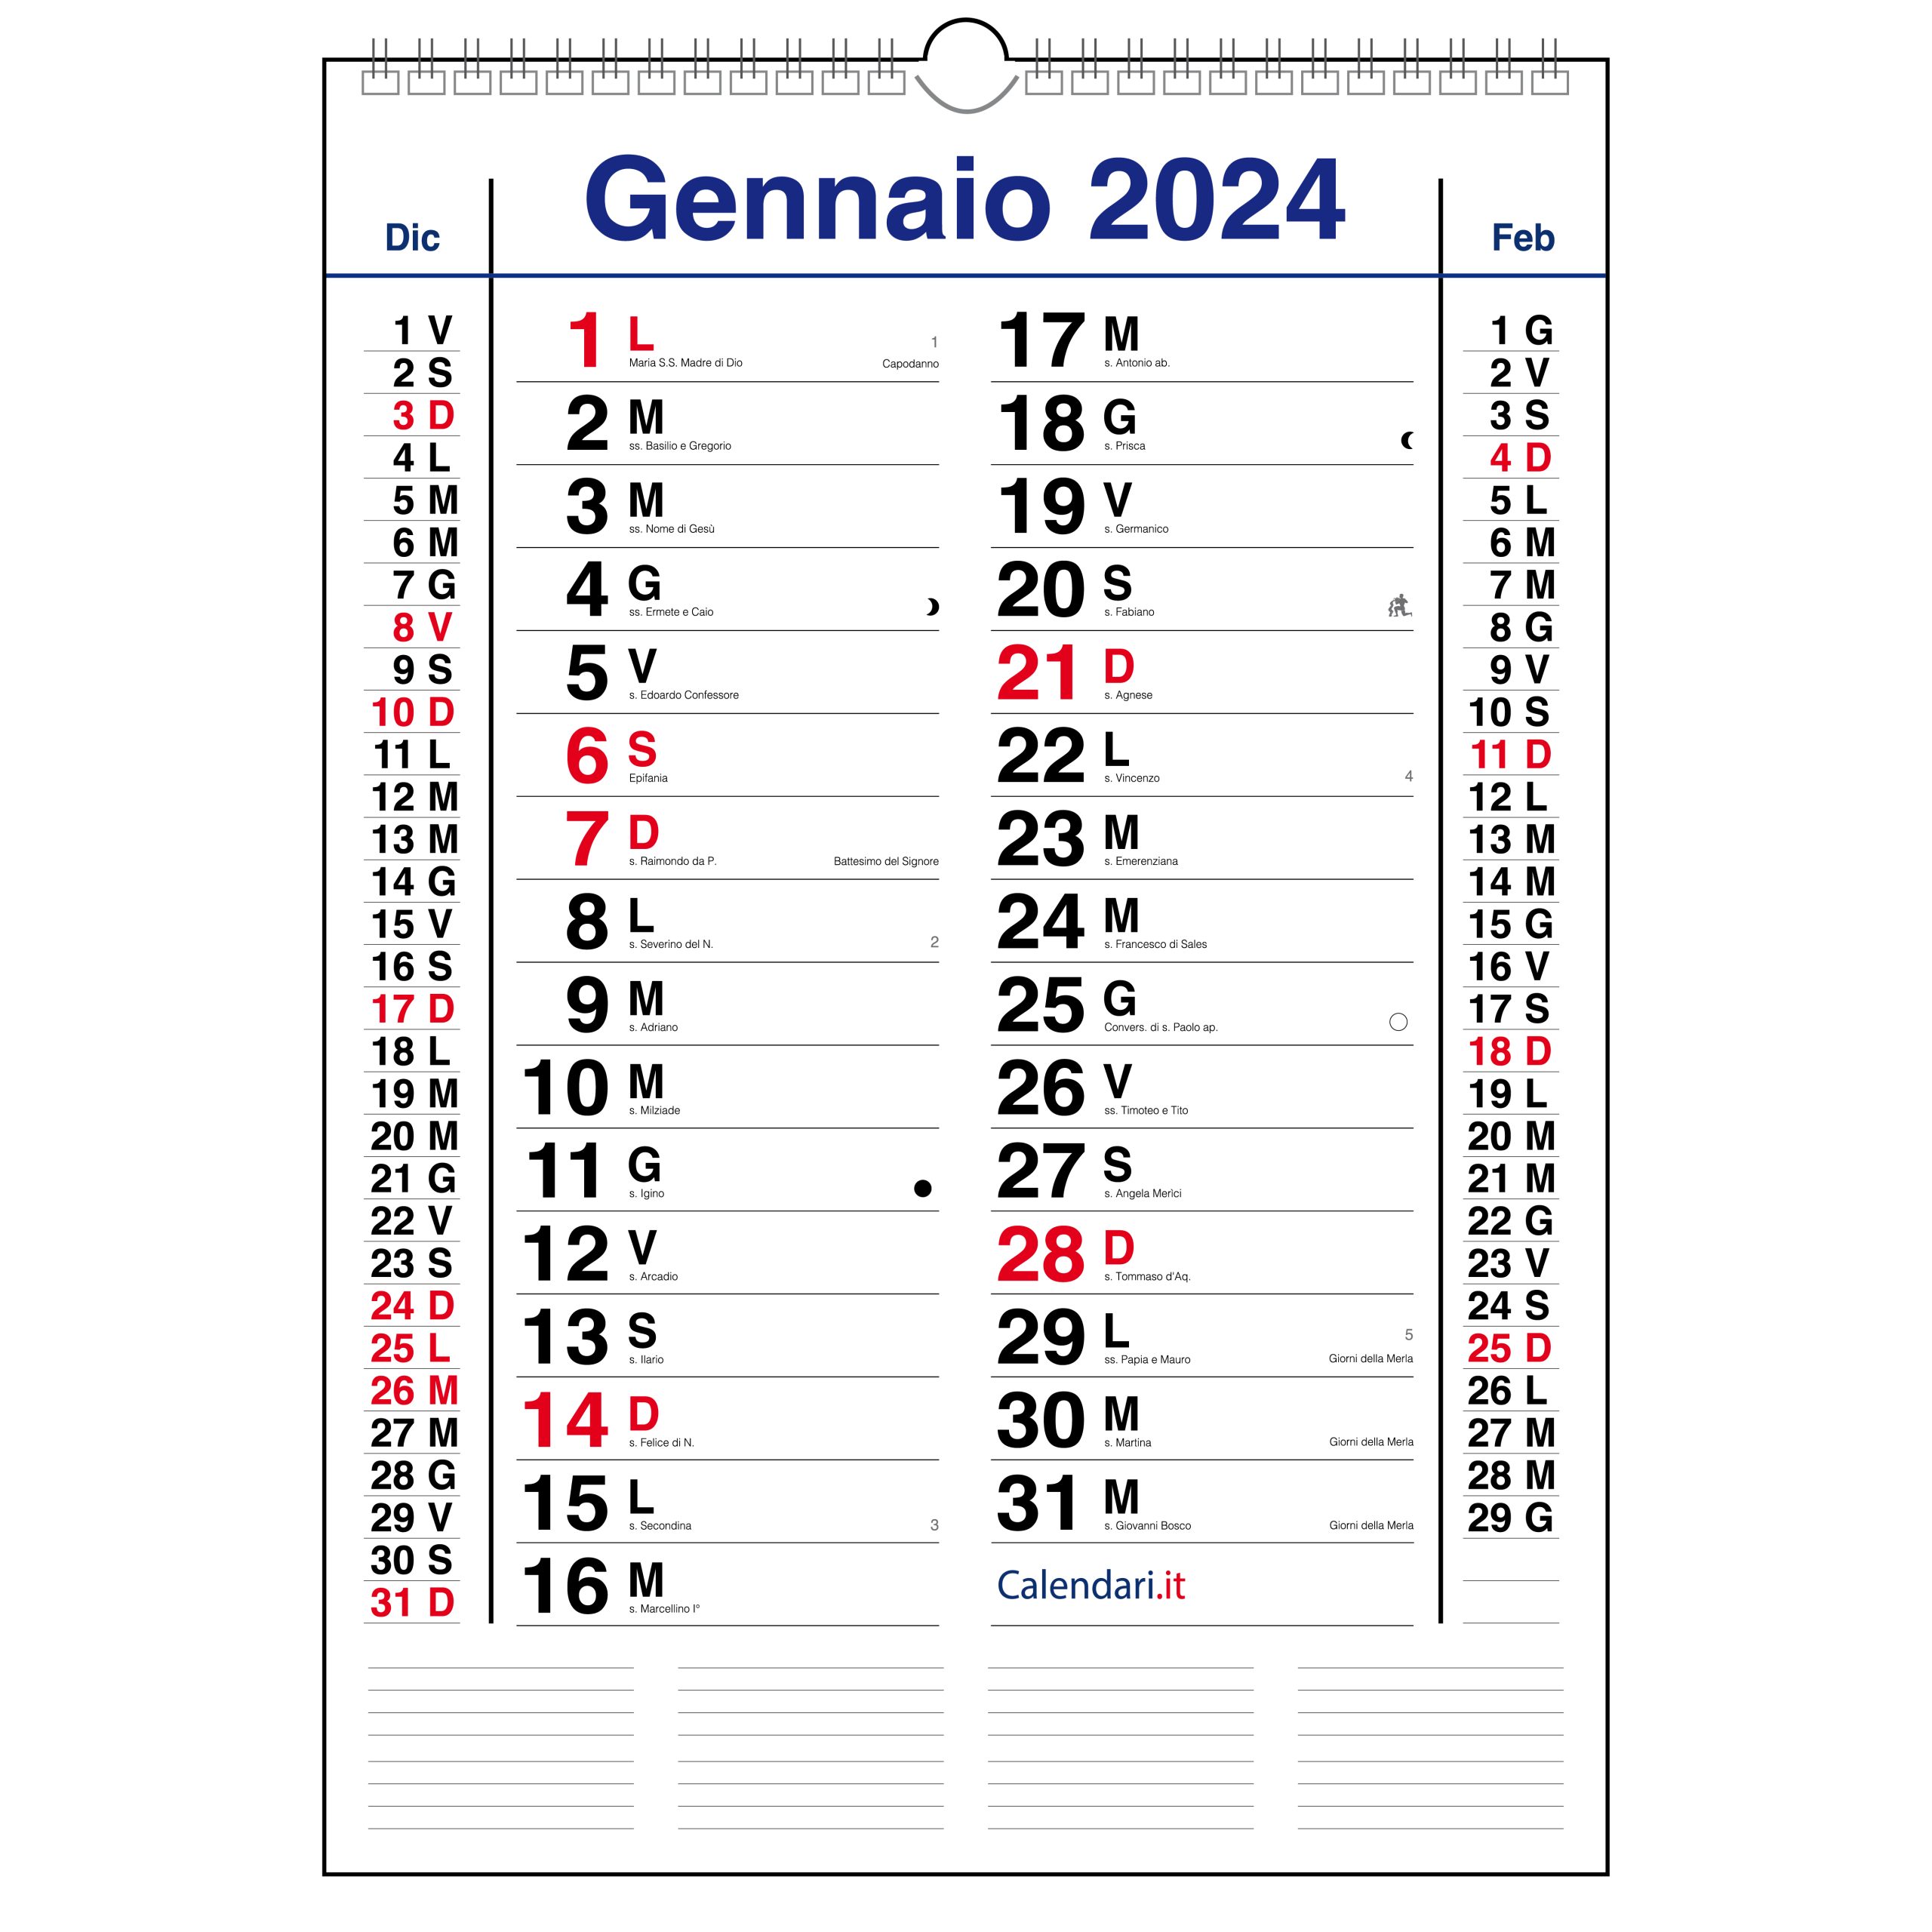 Calendario 2024 da muro a caselle tabellare orizzontale mensile -   - calendari 2024 - calendario 2024 - planner - agende -  settimanali - famiglia - calendario da tavolo - sottomano